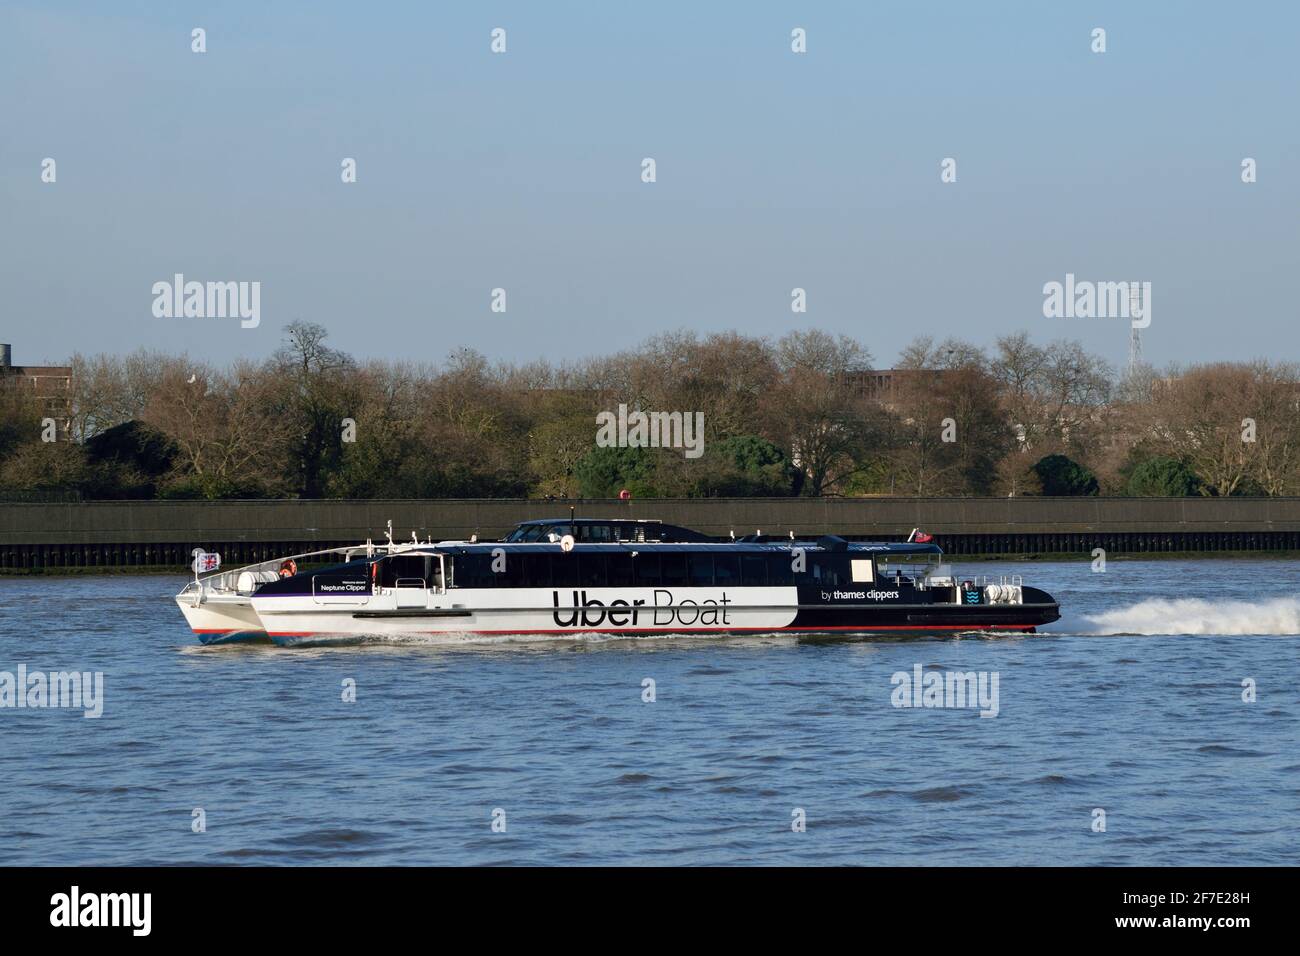 Uber Boot mit dem Thames Clipper River Bus Service Schiff Neptune Clipper betreibt den Flussbusdienst RB1 auf dem Fluss Thames in London Stockfoto